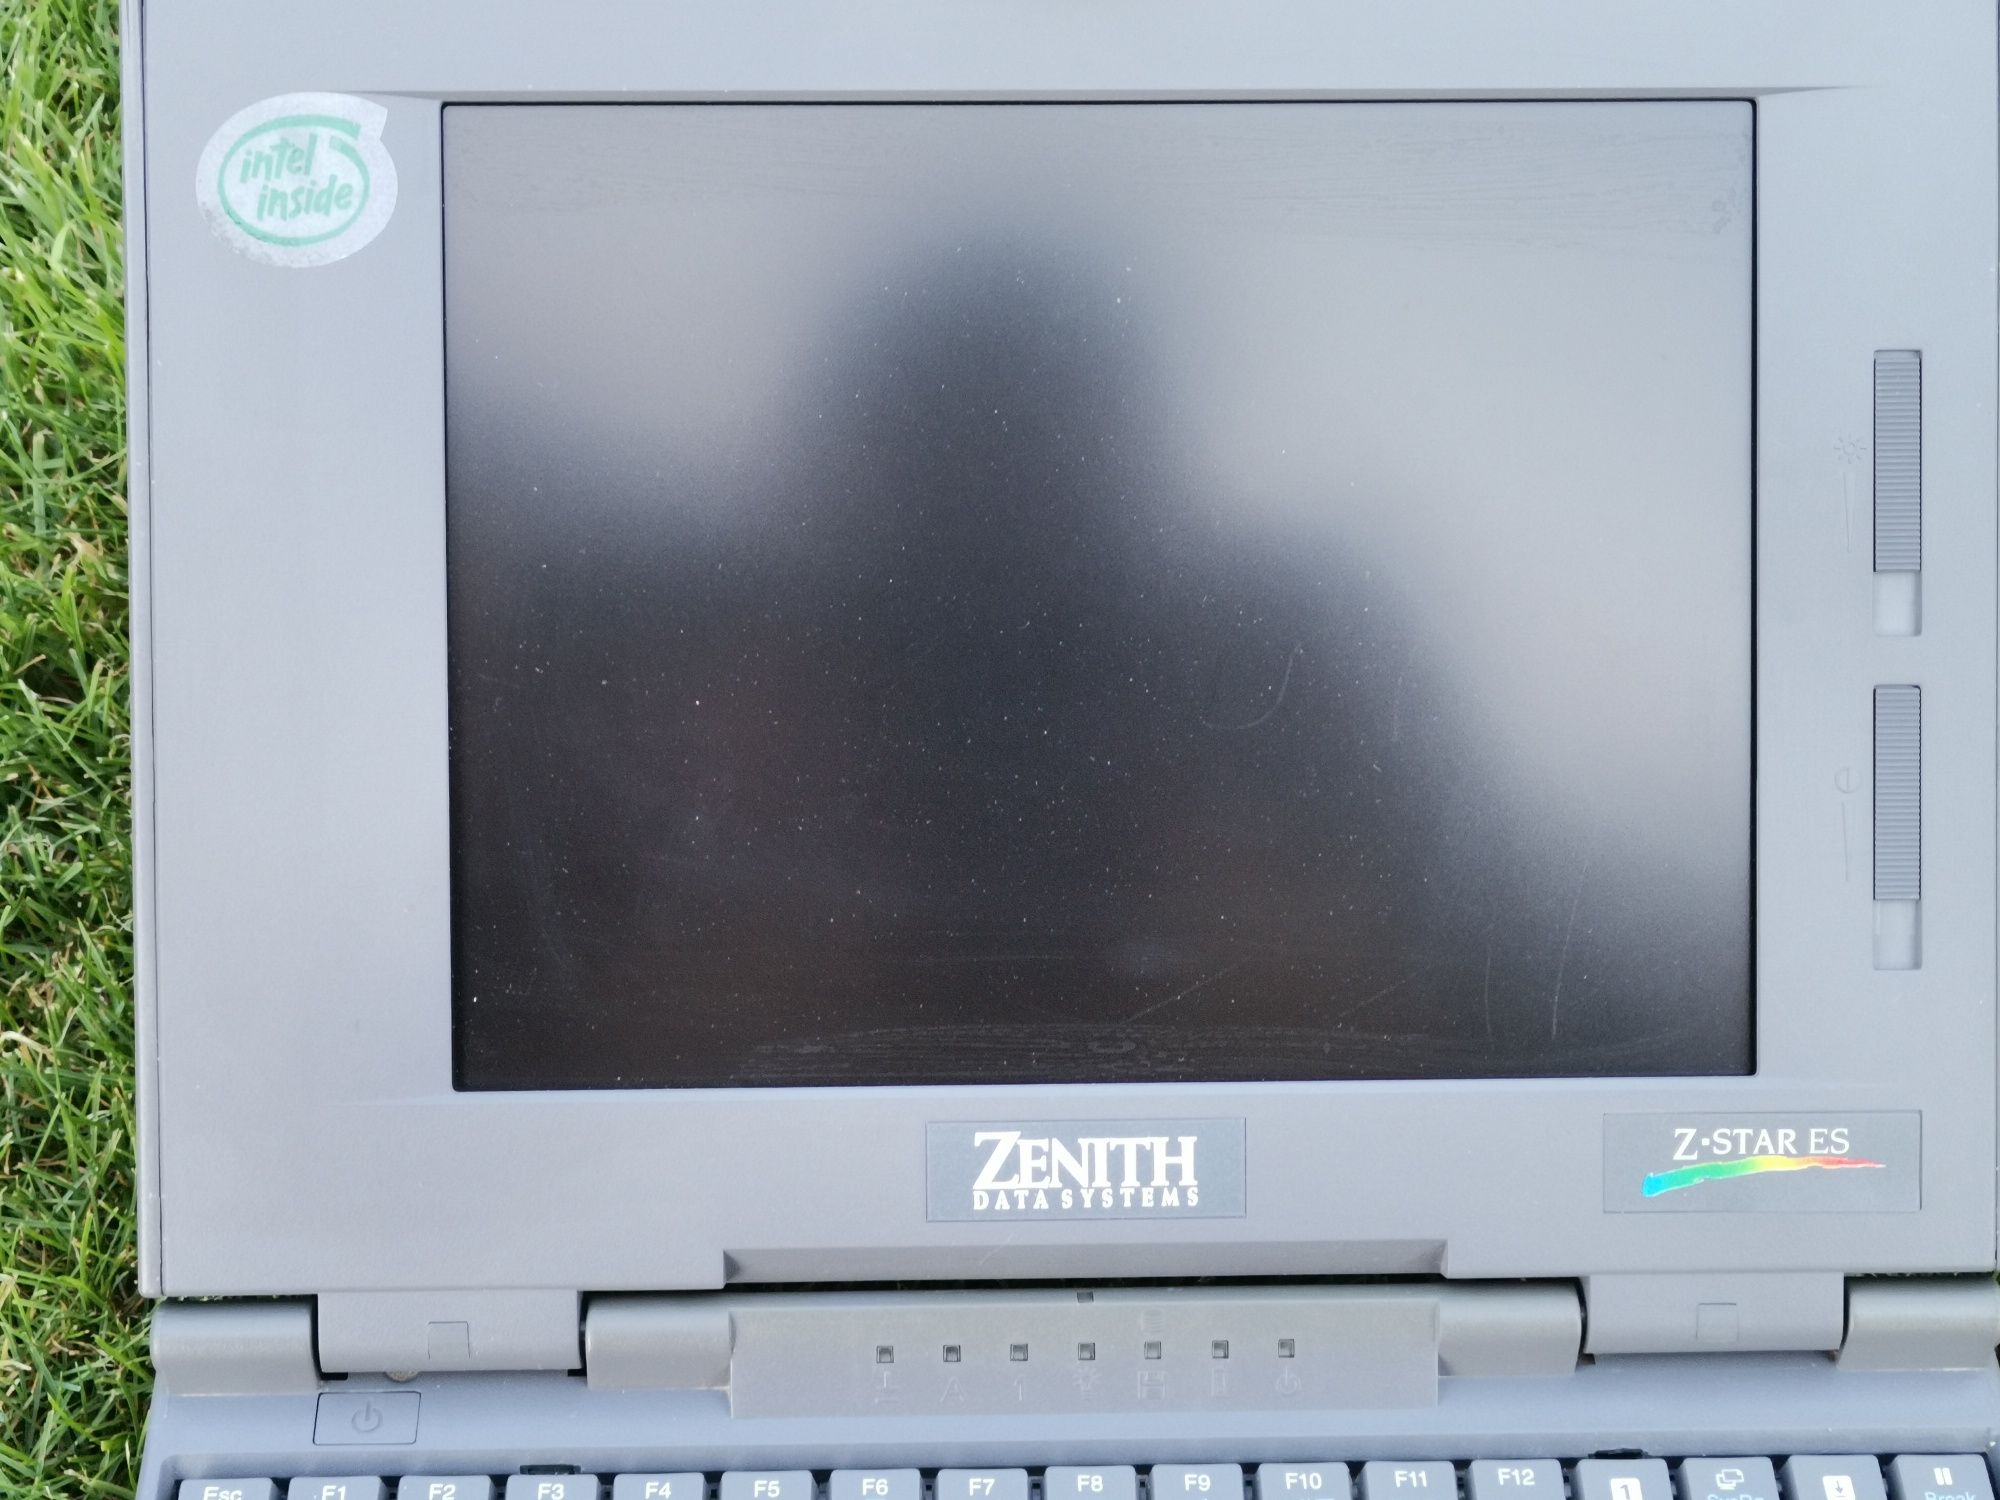 Zenith Z-Star ES 1994